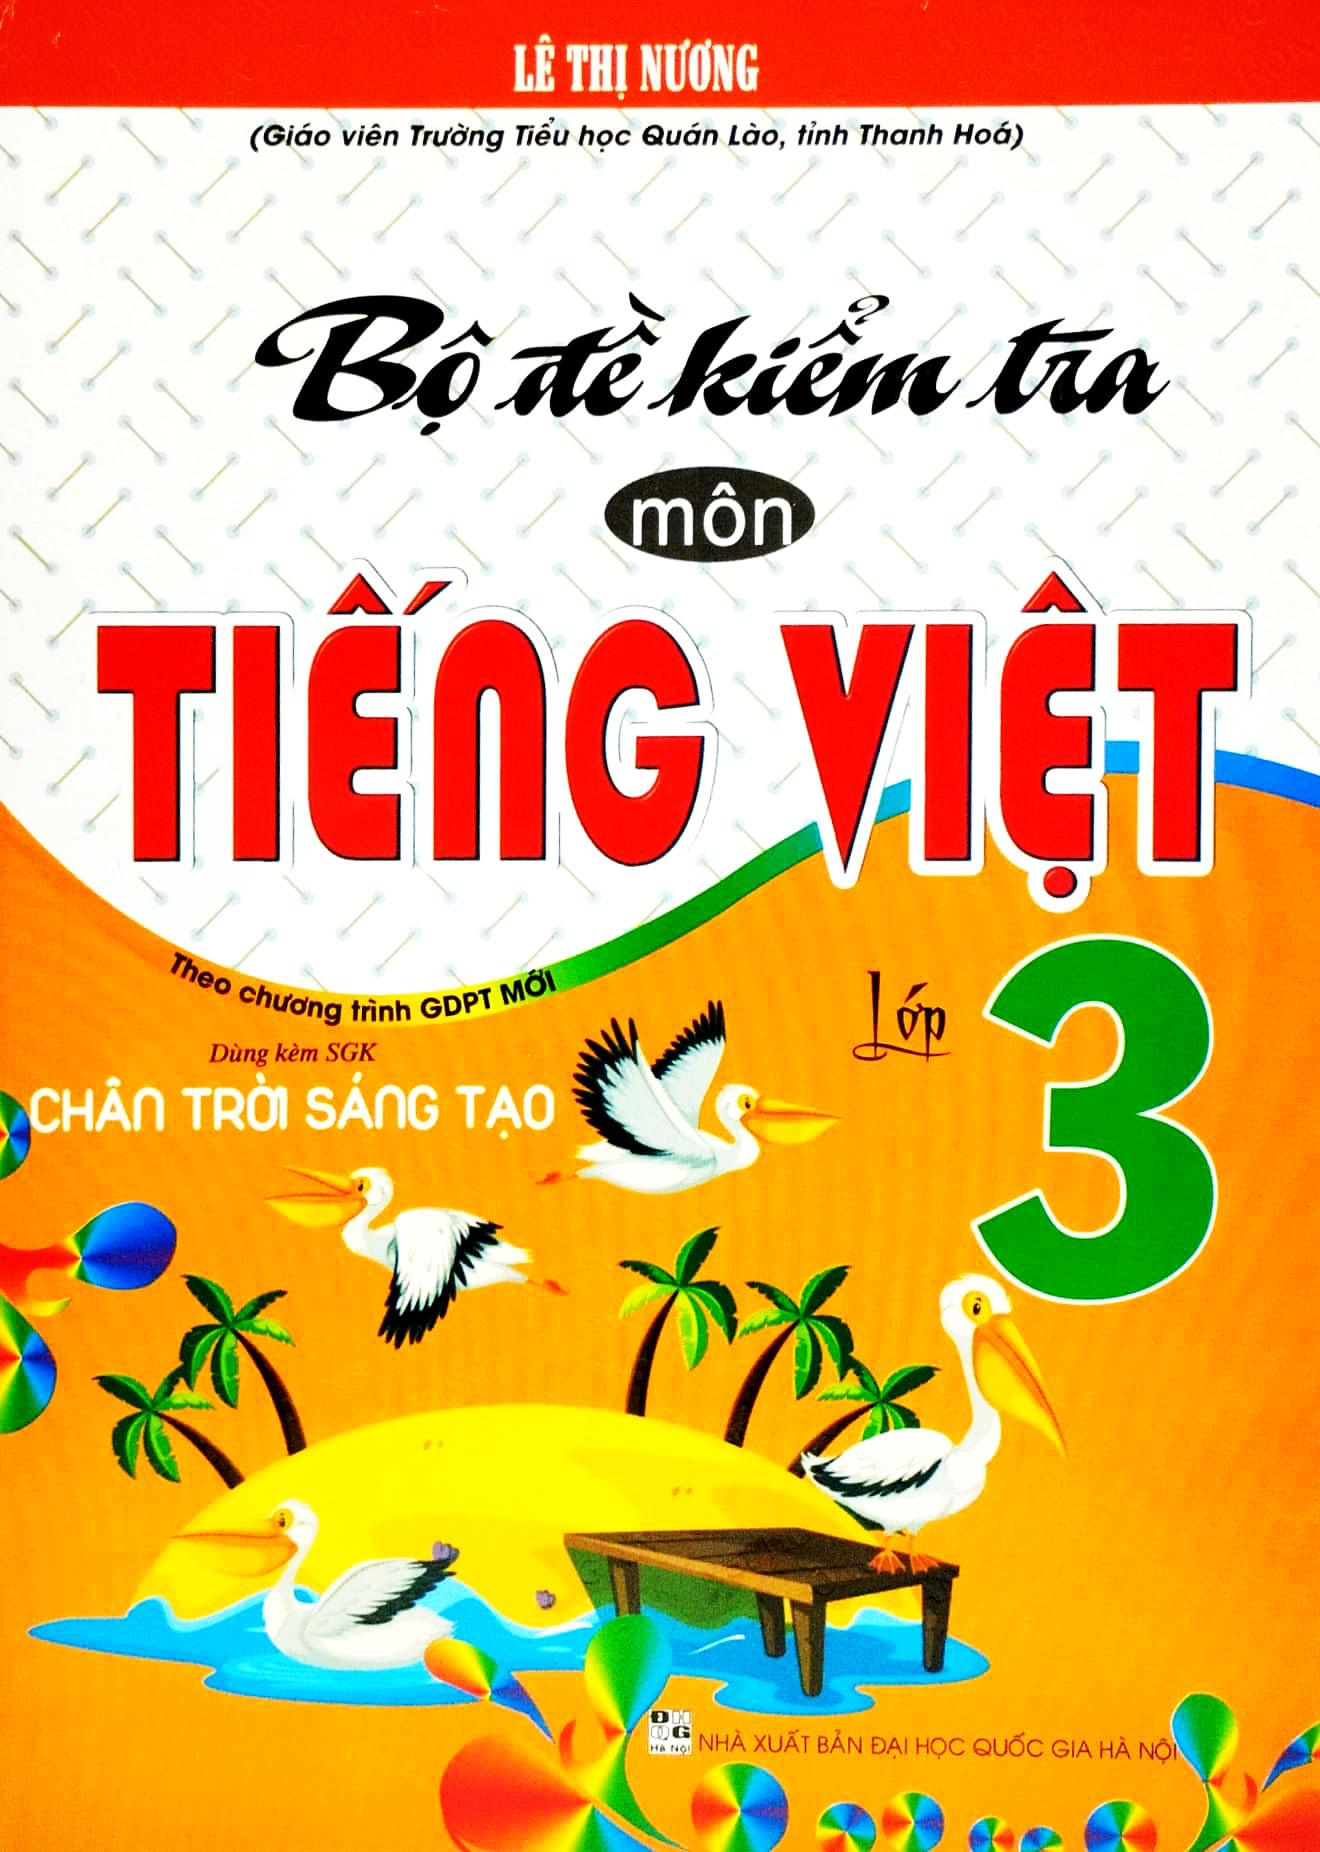 Bộ Đề Kiểm Tra Môn Tiếng Việt Lớp 3 (Theo Chương Trình GDPT Mới) (Dùng Kèm SGK Chân Trời Sáng Tạo)